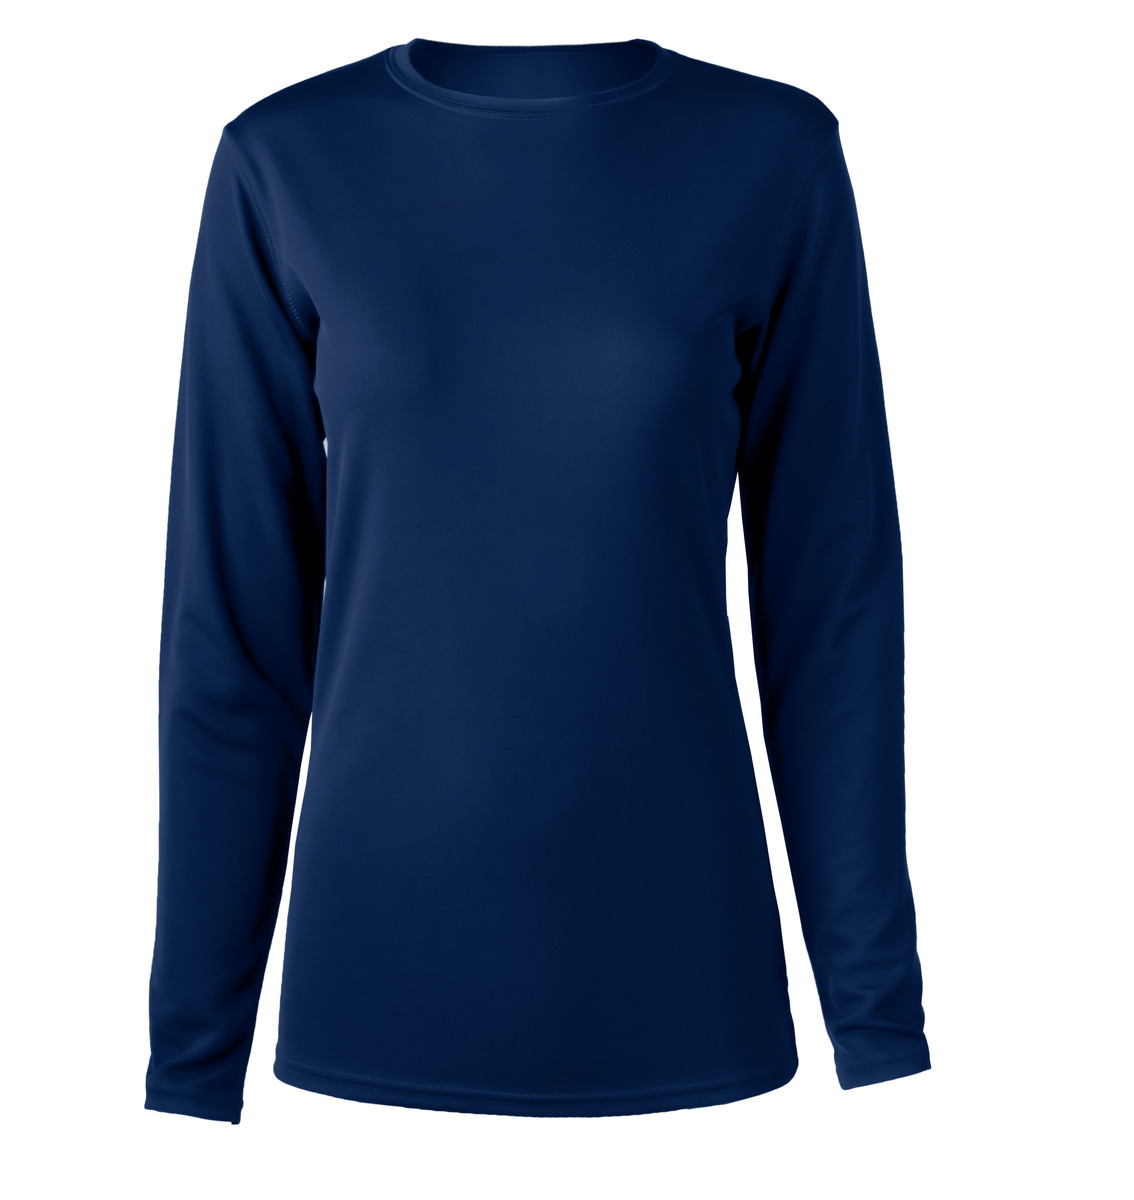 Zorrel Z6051 - Women's Chicago Long Sleeve Training Tee $9.59 - T-Shirts